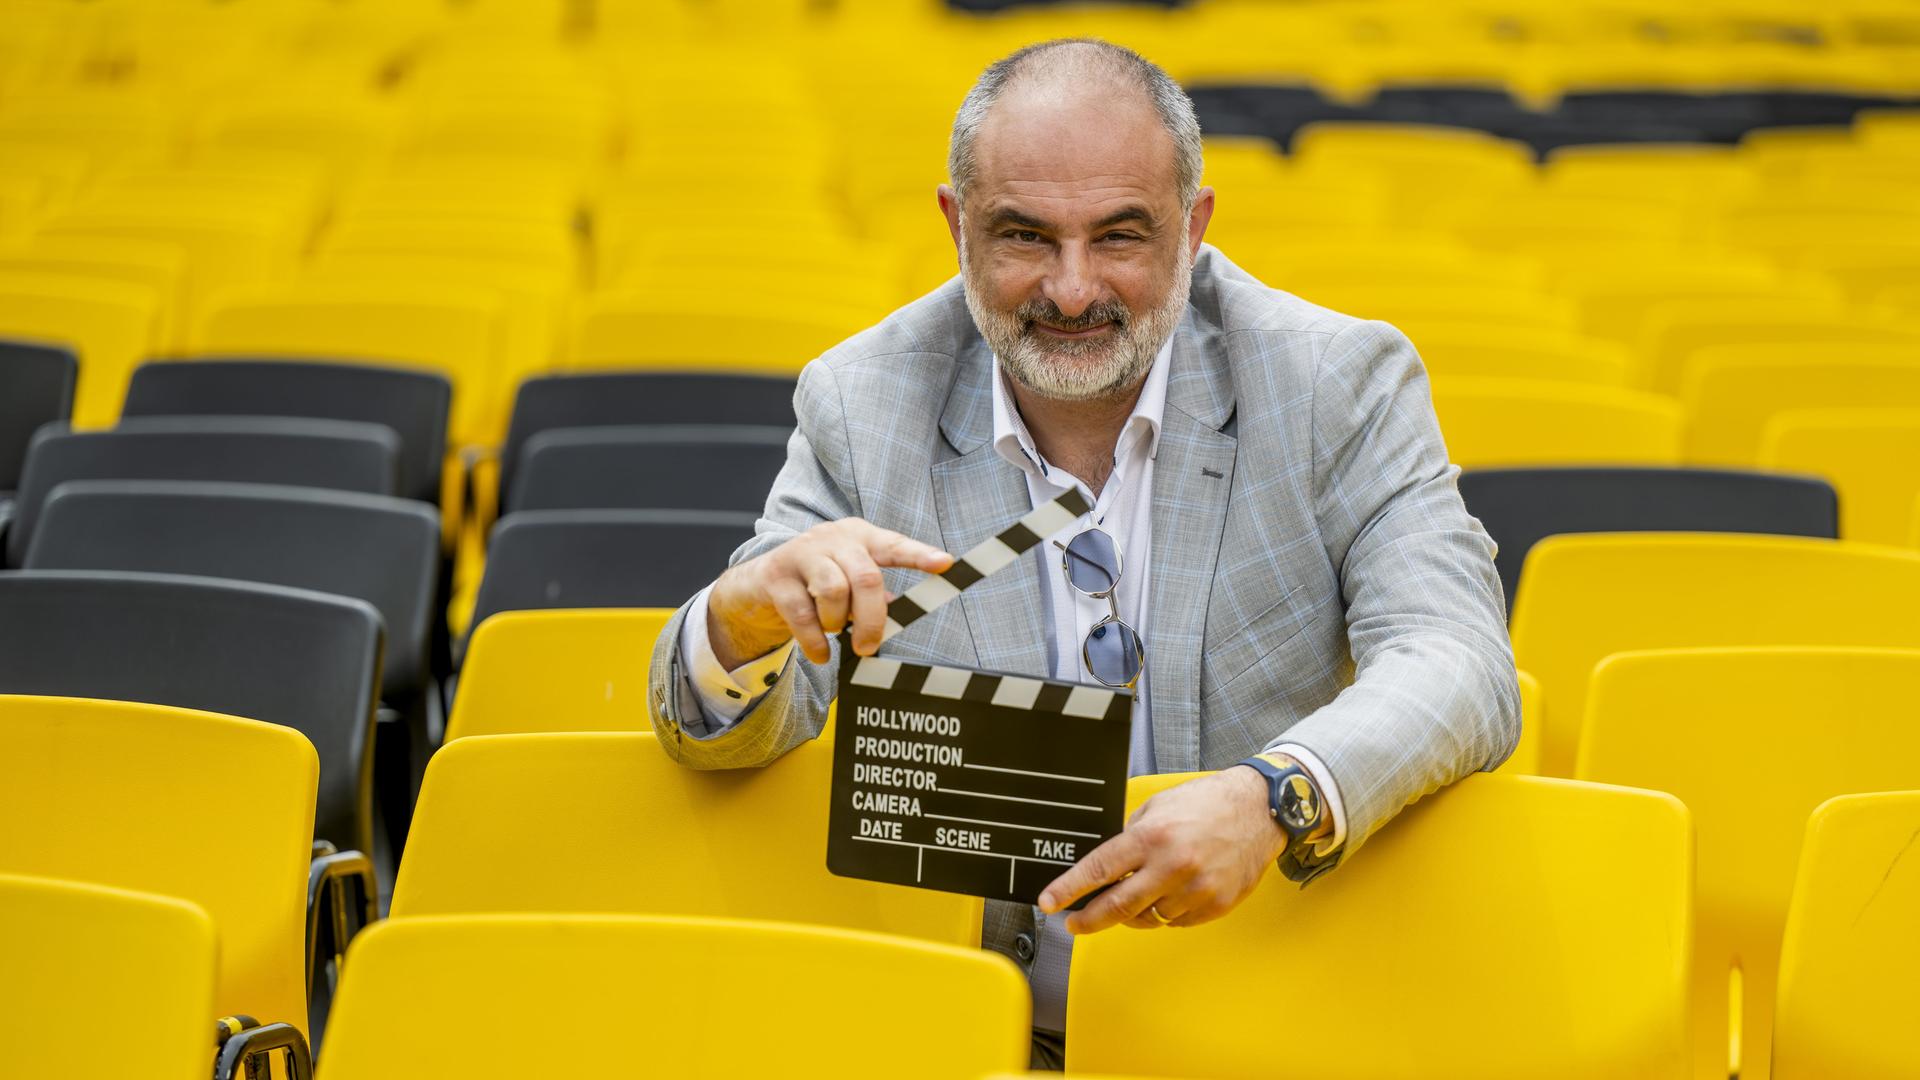 Der künstlerische Leiter des Filmfestivals in Locarno, Giona A. Nazzaro, inmitten von gelben Stühlen mit einer Filmklappe in der Hand. 